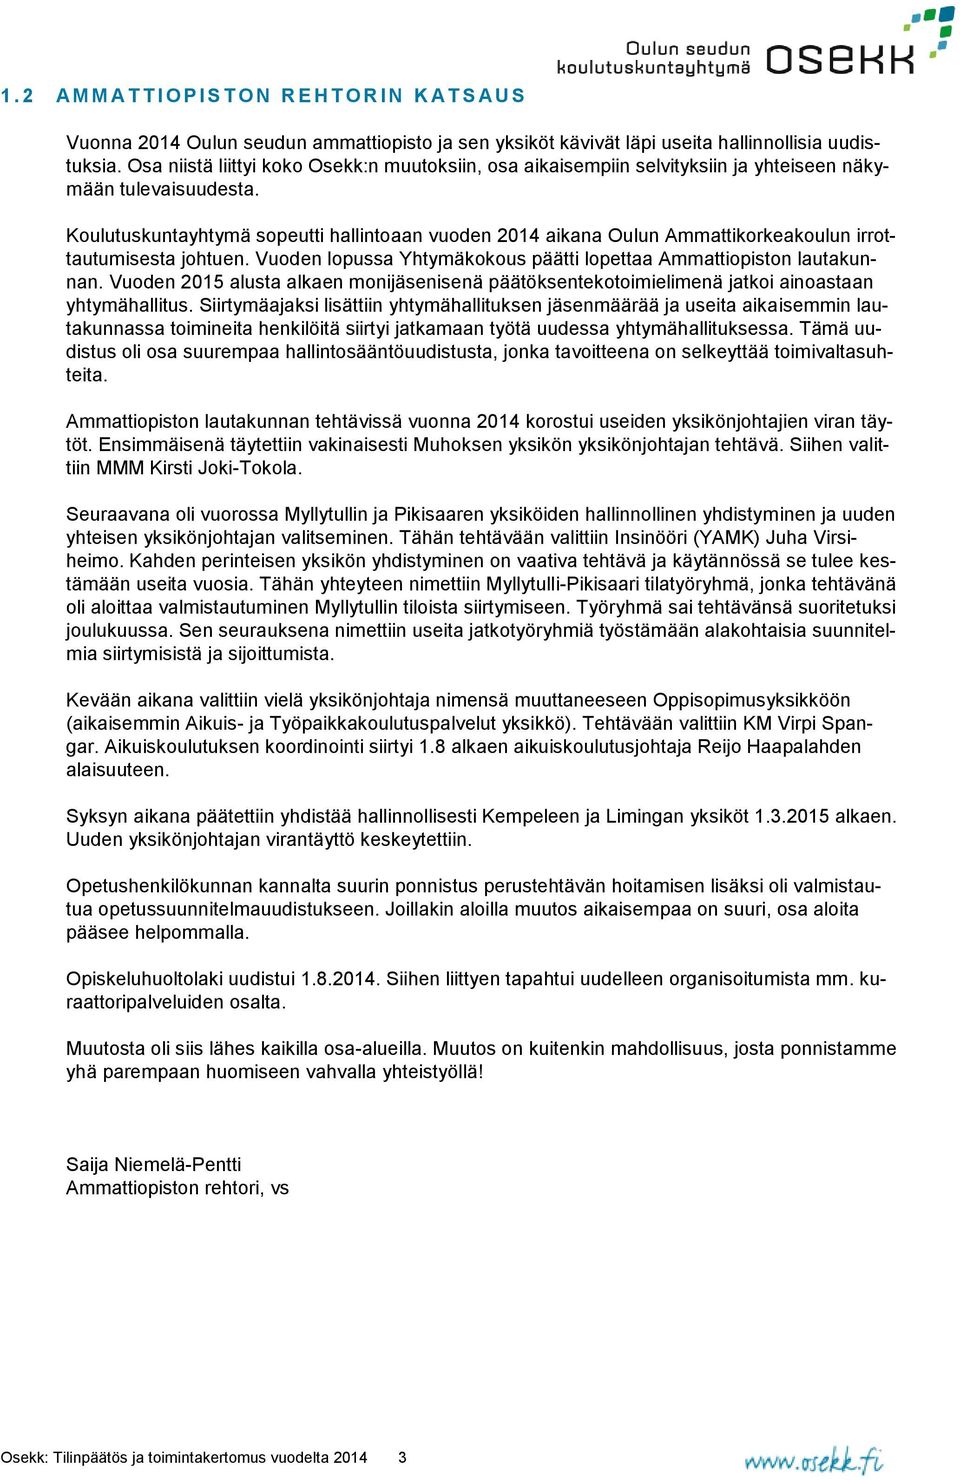 Koulutuskuntayhtymä sopeutti hallintoaan vuoden 2014 aikana Oulun Ammattikorkeakoulun irrottautumisesta johtuen. Vuoden lopussa Yhtymäkokous päätti lopettaa Ammattiopiston lautakunnan.